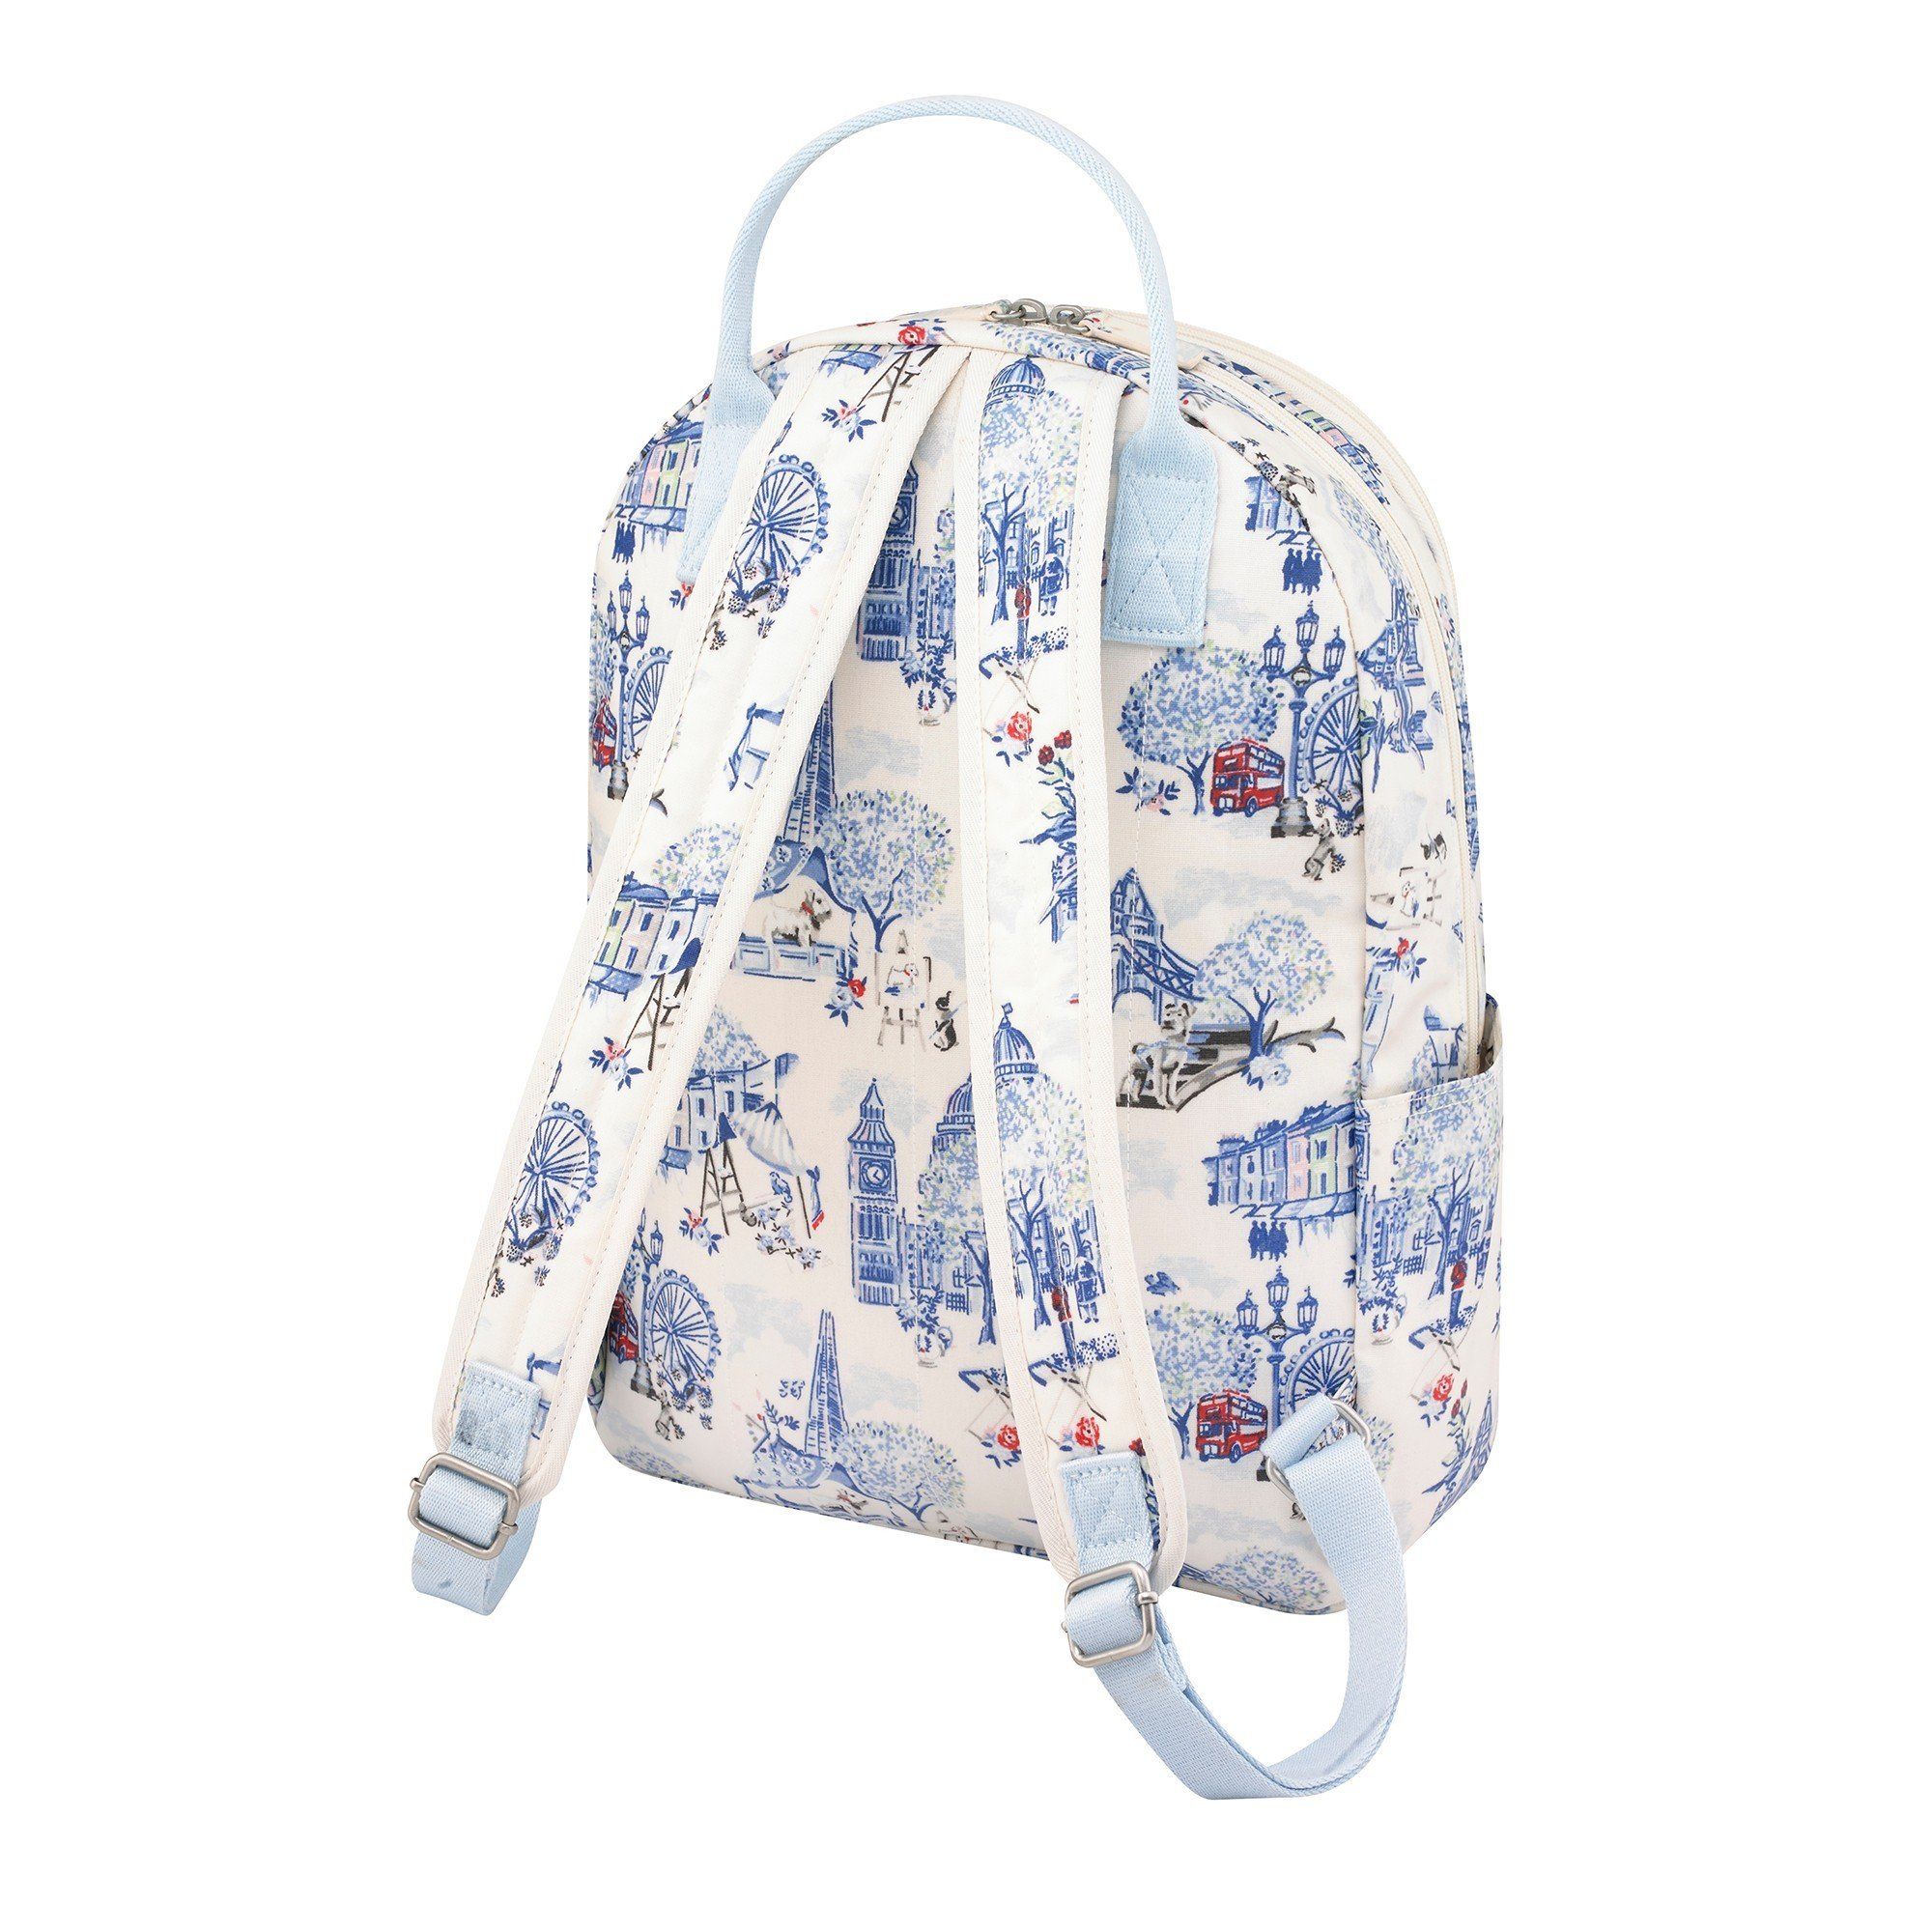  Ba lô đi học/đi làm/Pocket Backpack - 30 Years London Toile - Cream - 1083217 